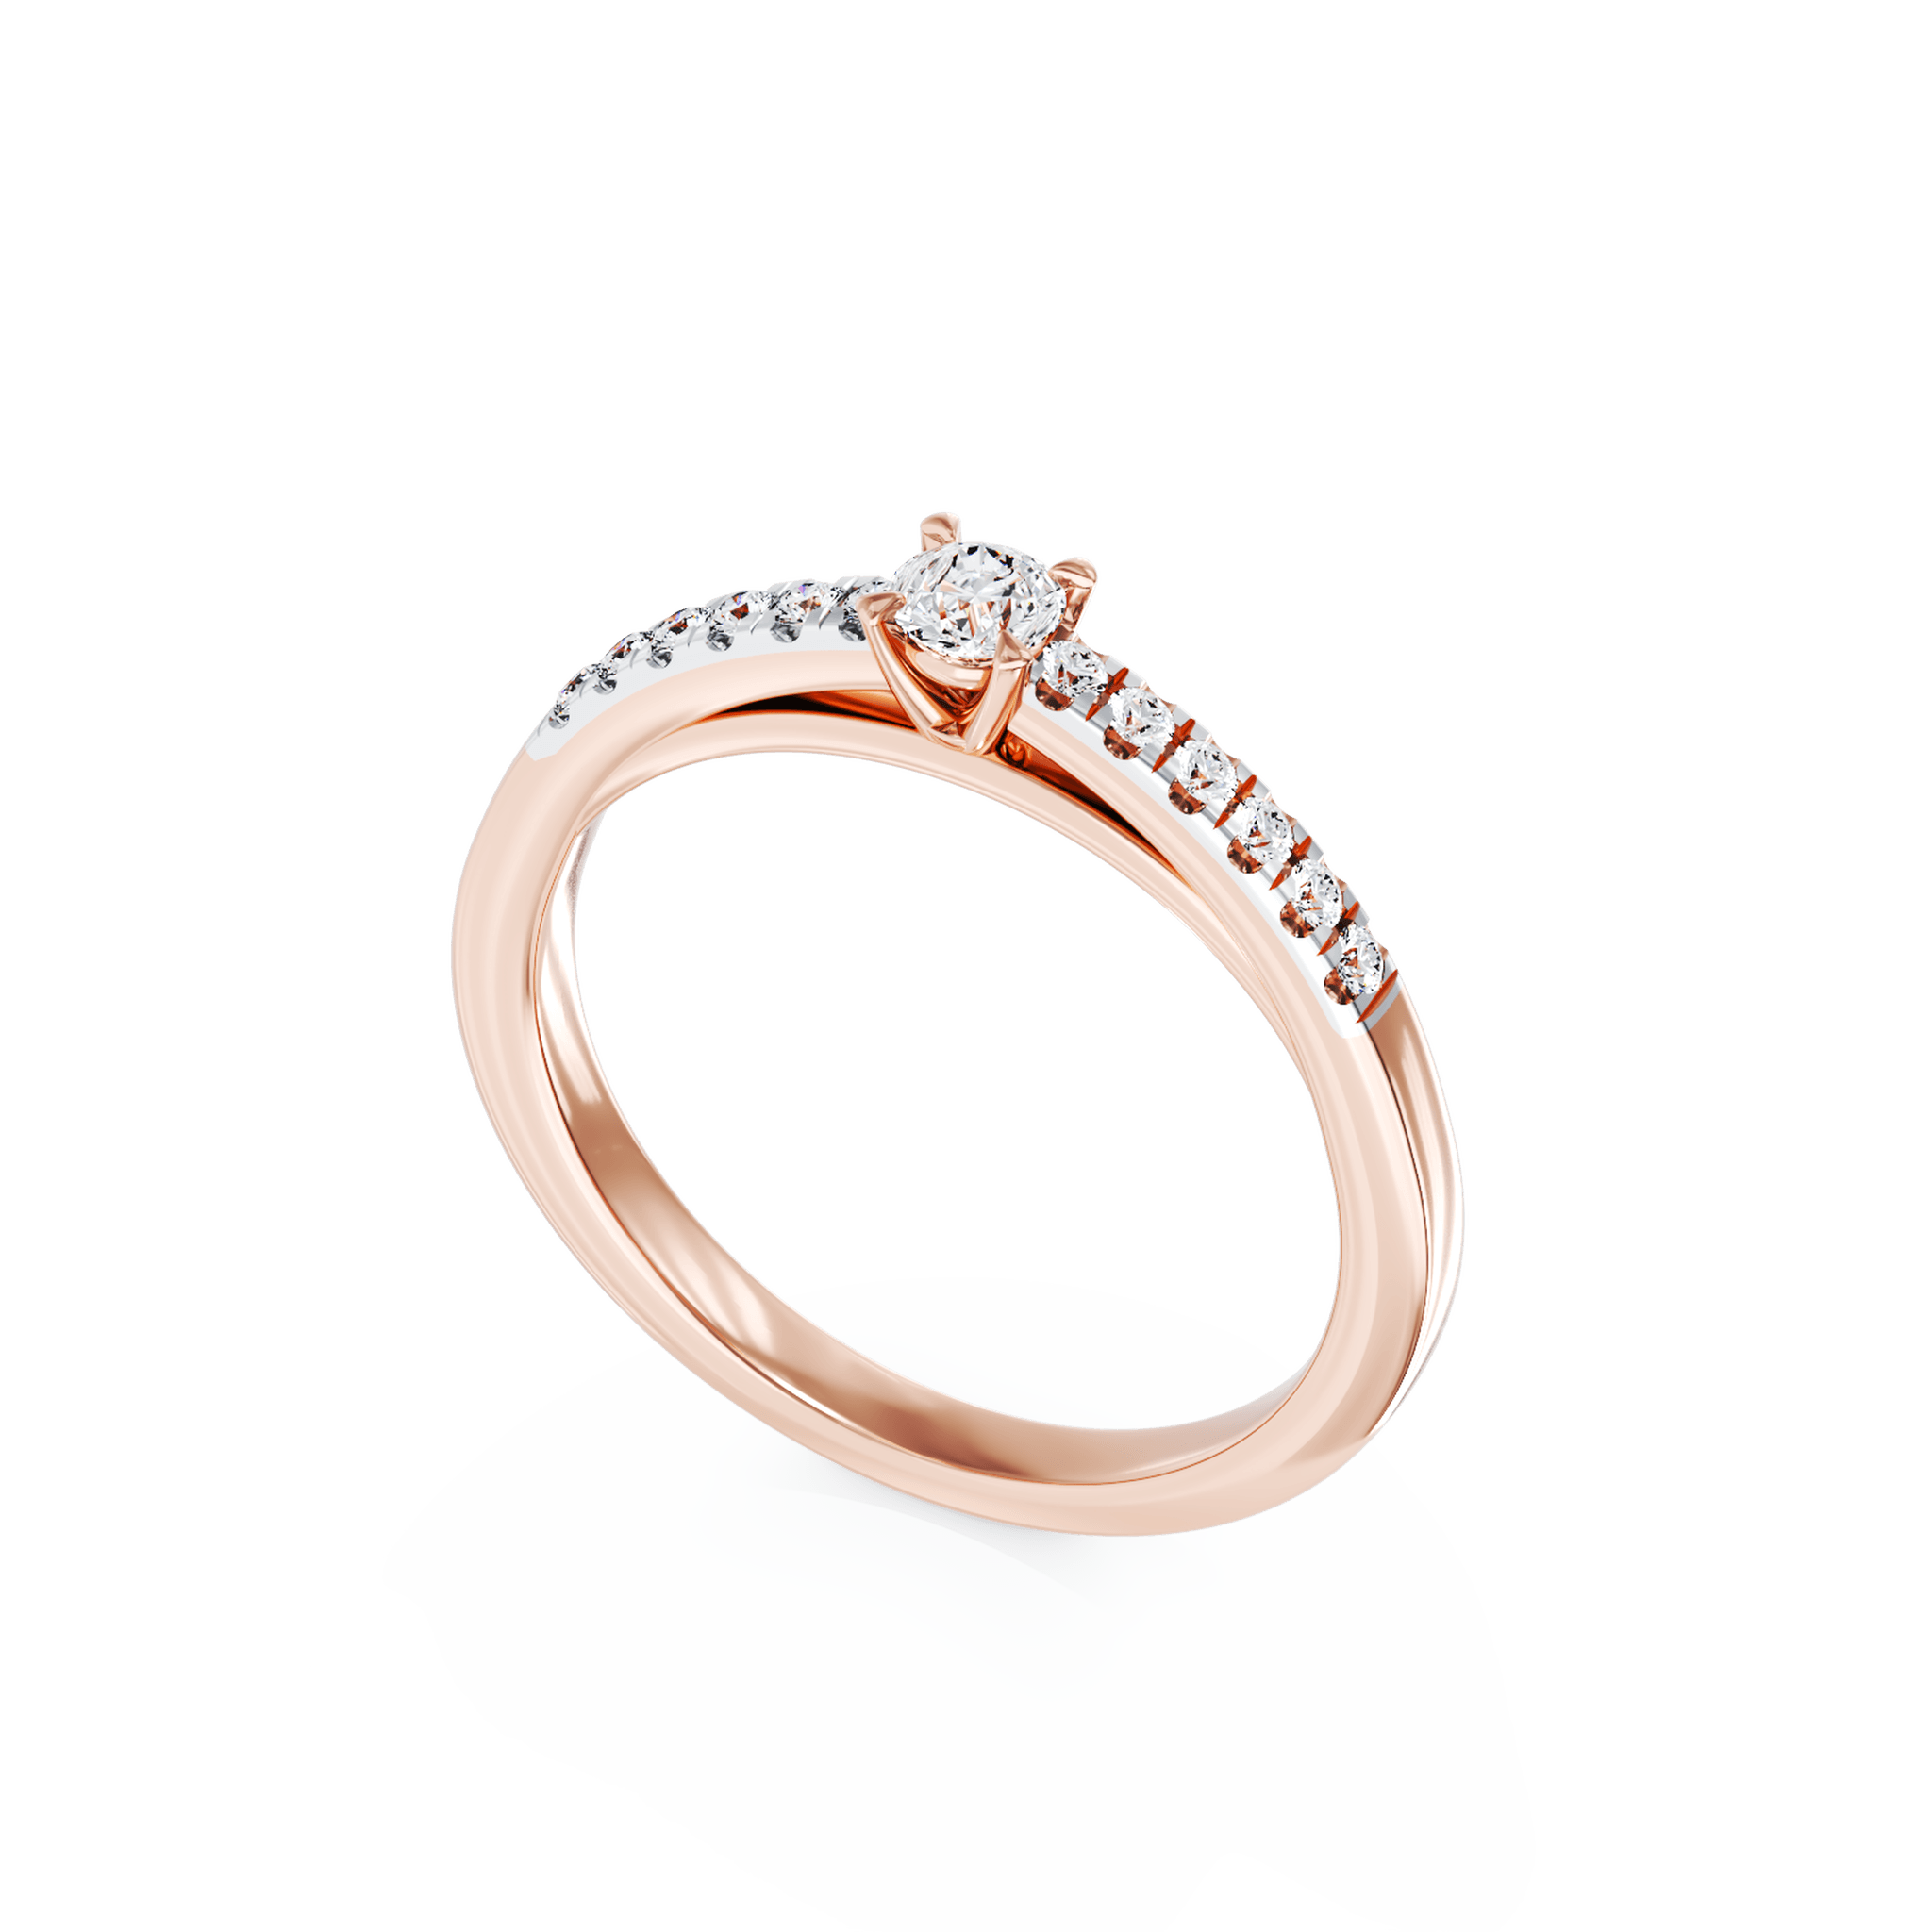 Eljegyzési gyűrű 18K-os rózsaszín aranyból 0,28ct gyémánttal és 0,12ct gyémánttal. Gramm: 2,8